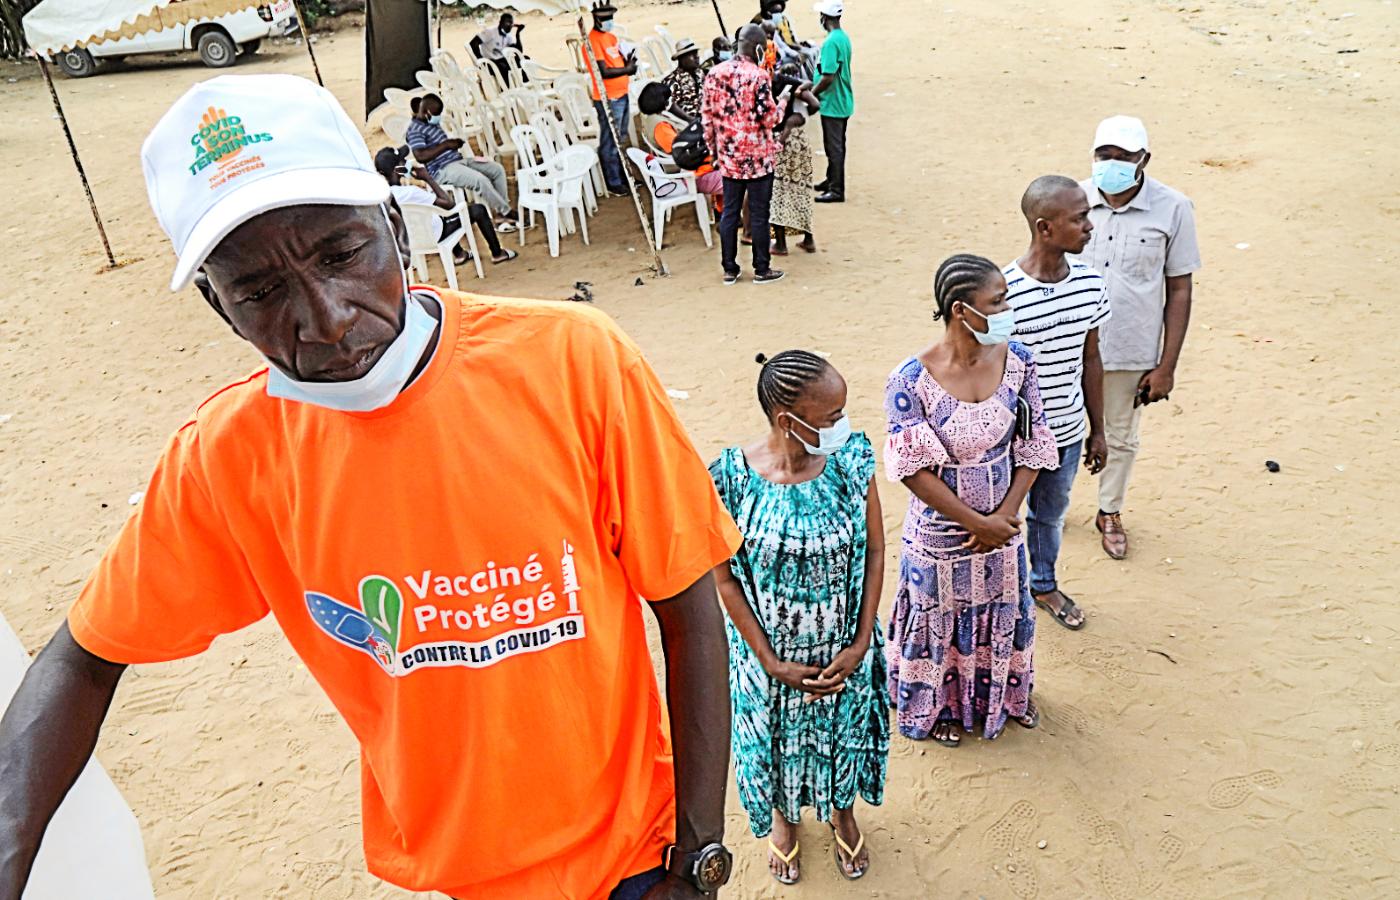 Oczekujący w kolejce po preparat na covid-19 w mobilnym punkcie szczepień w Abidżanie, Wybrzeże Kości Słoniowej, wrzesień 2021 r.